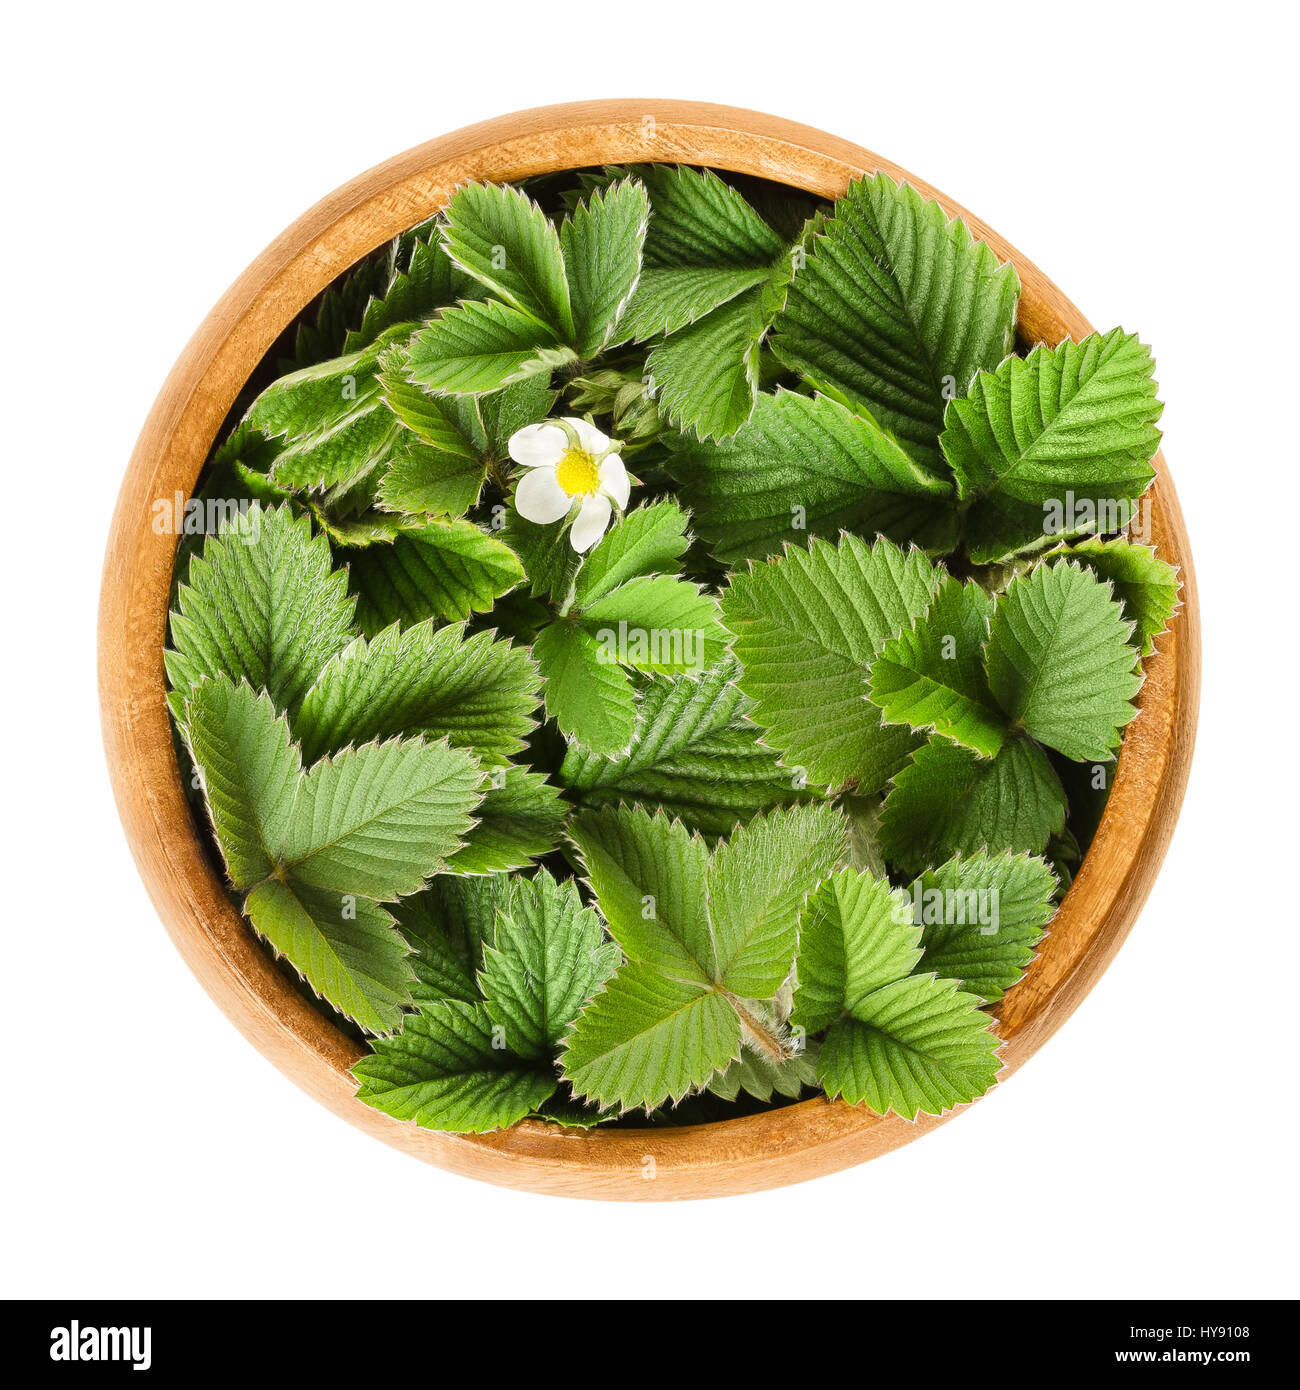 Selvatico europeo fragola Foglie in ciotola di legno con un unico fiore bianco. Fragaria vesca. Fresco verde foglie commestibili, utilizzato per infusioni e insalate. Foto Stock